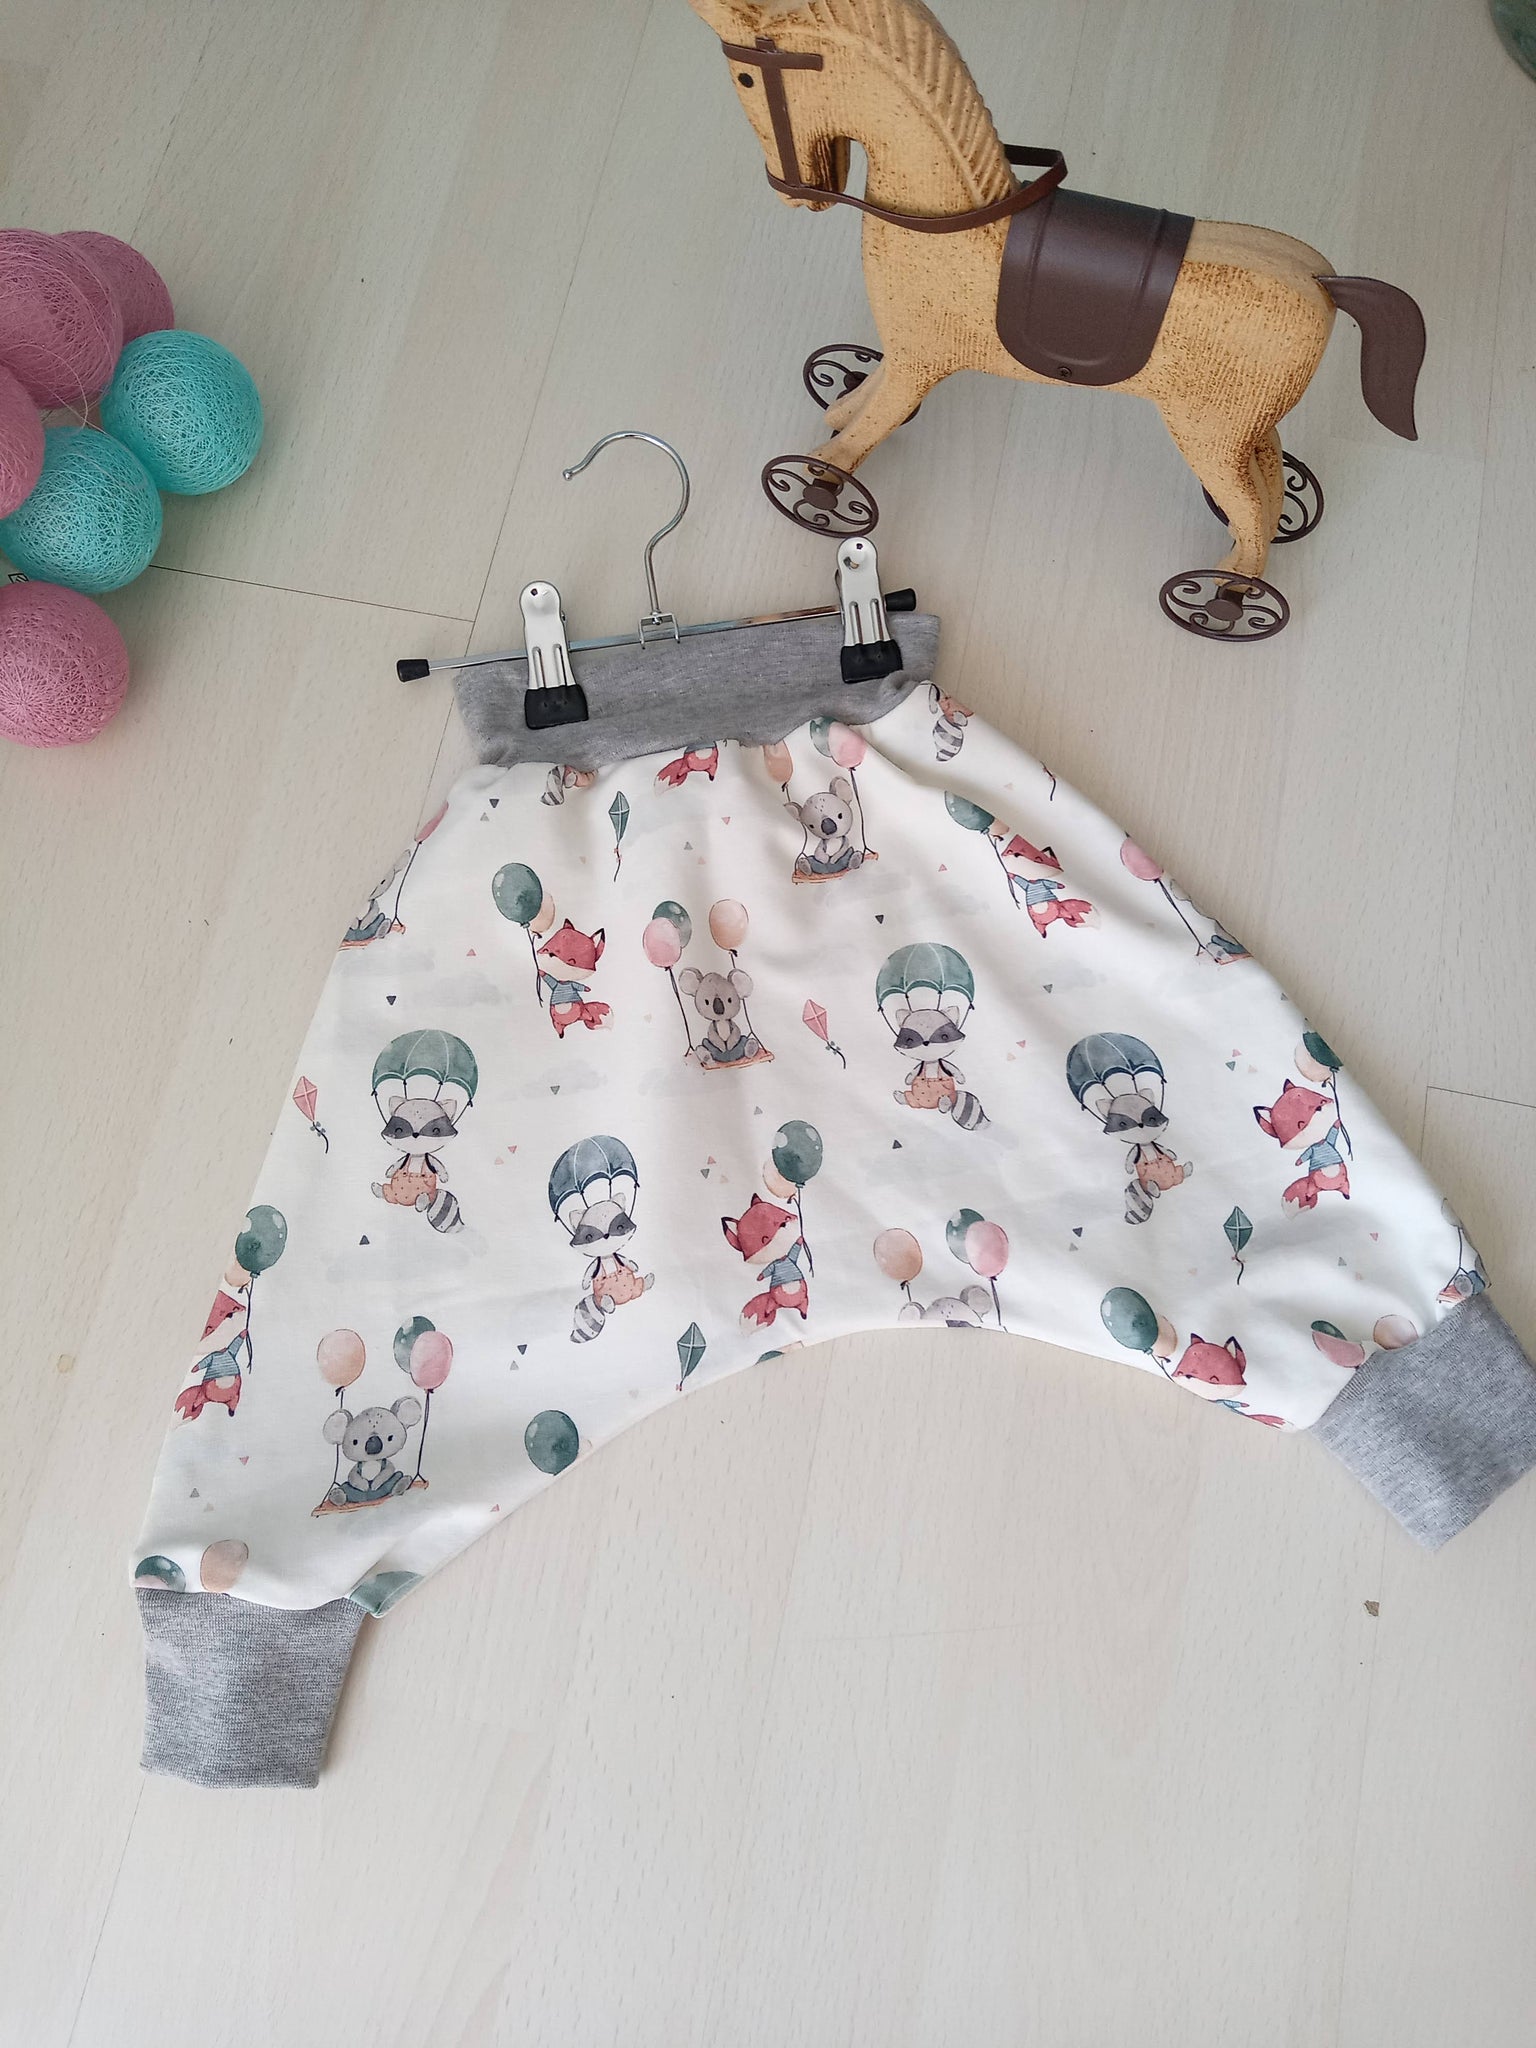 Sarouel pantalon bébé  - Koala & renard